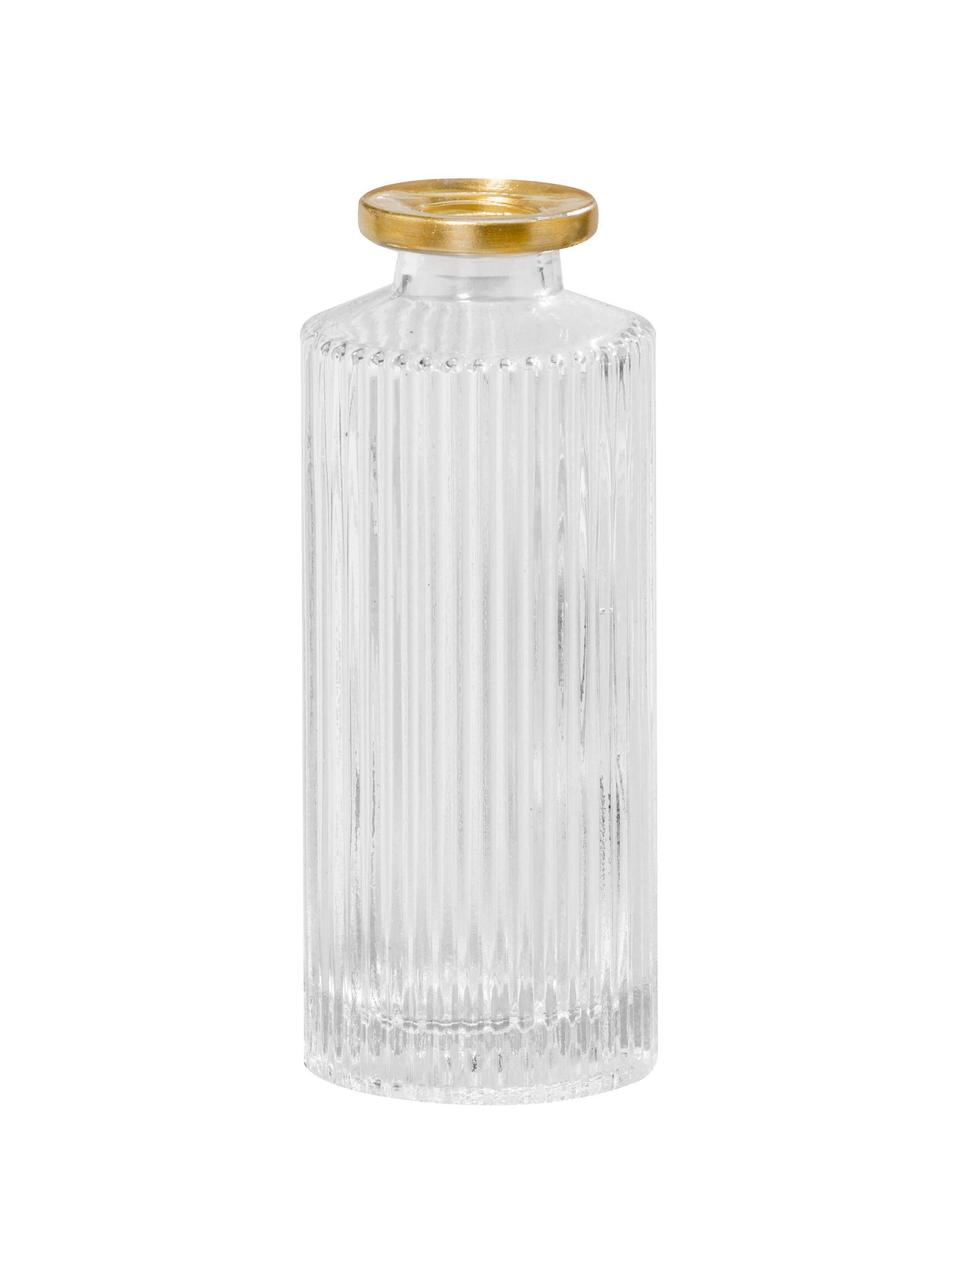 Komplet wazonów ze szkła Adore, 3 elem., Transparentny z krawędzią w odcieniu złota, Ø 5 x W 13 cm